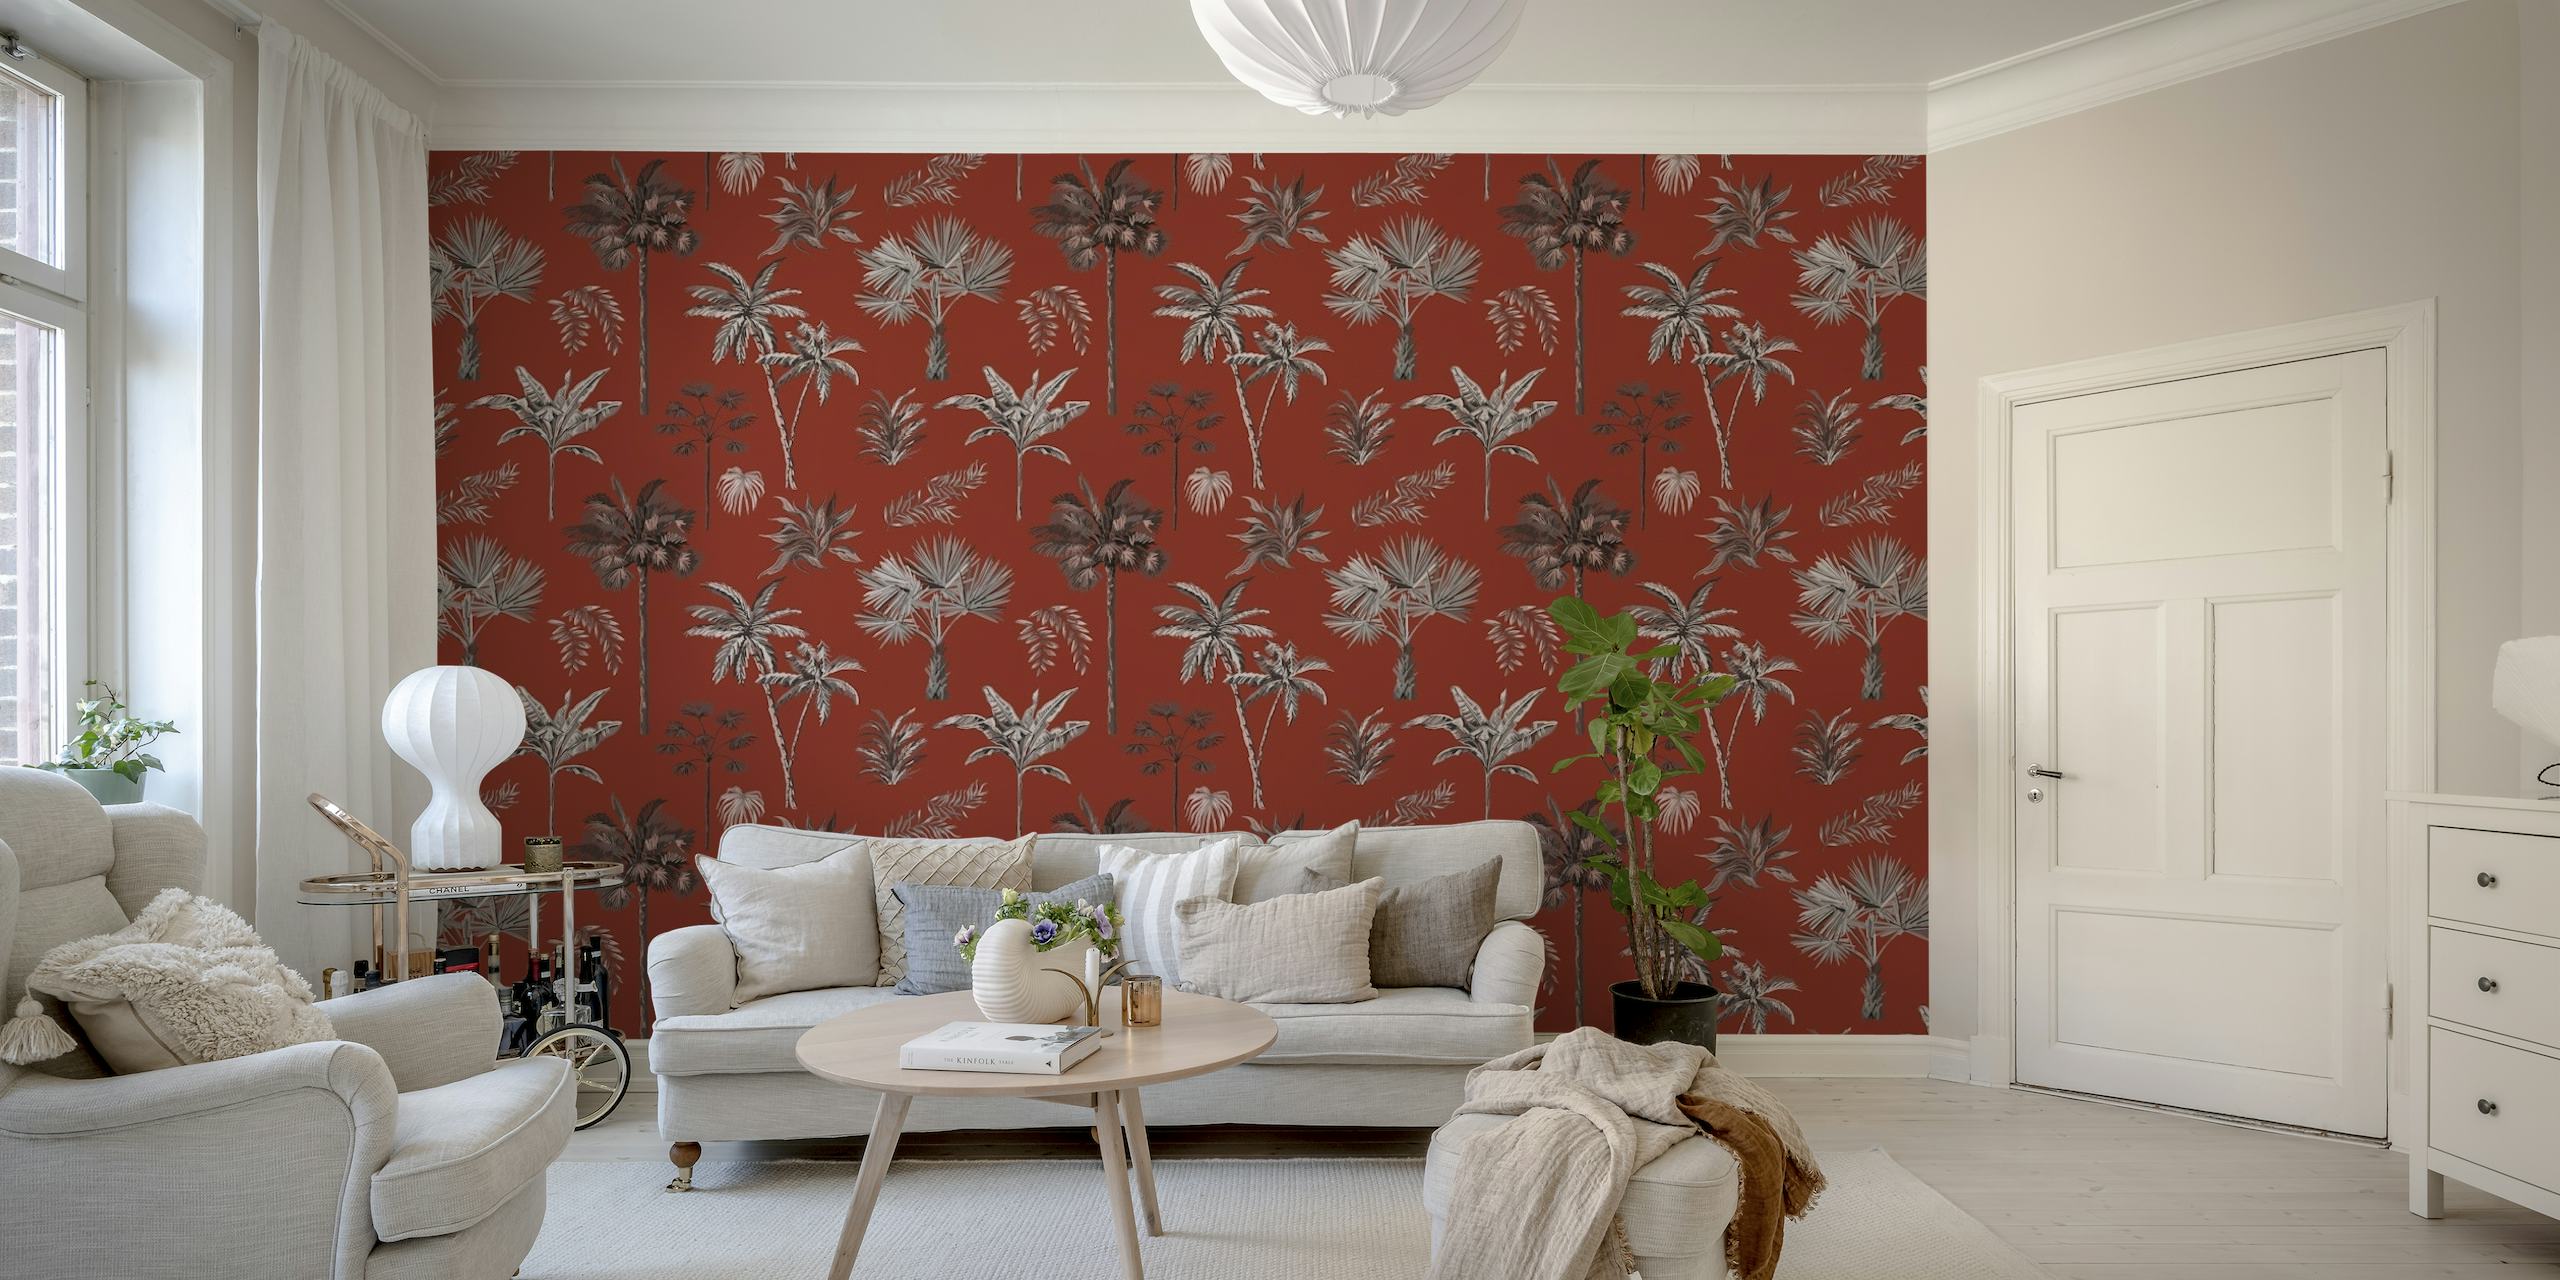 Fotomural vinílico de parede tradicional com padrão de árvore indiana com fundo vermelho e desenhos florais prateados